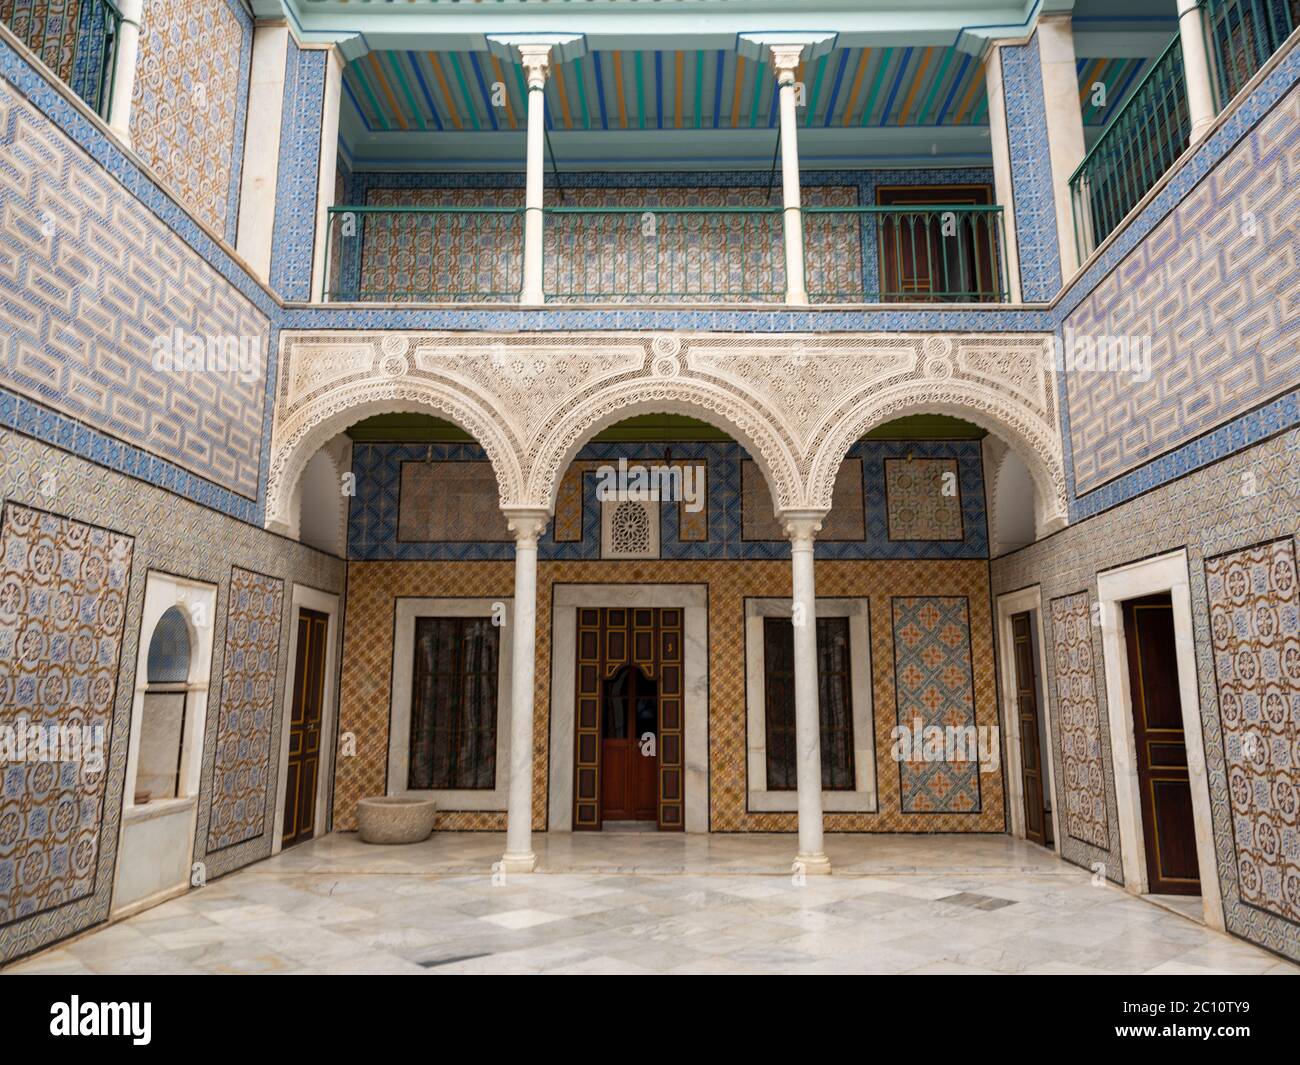 Patio de azulejos ornamentados de un palacio otomano restaurado en el corazón de la medina de Túnez con arcos de filigranas, suelos de mármol y diseños de azulejos variados. Foto de stock